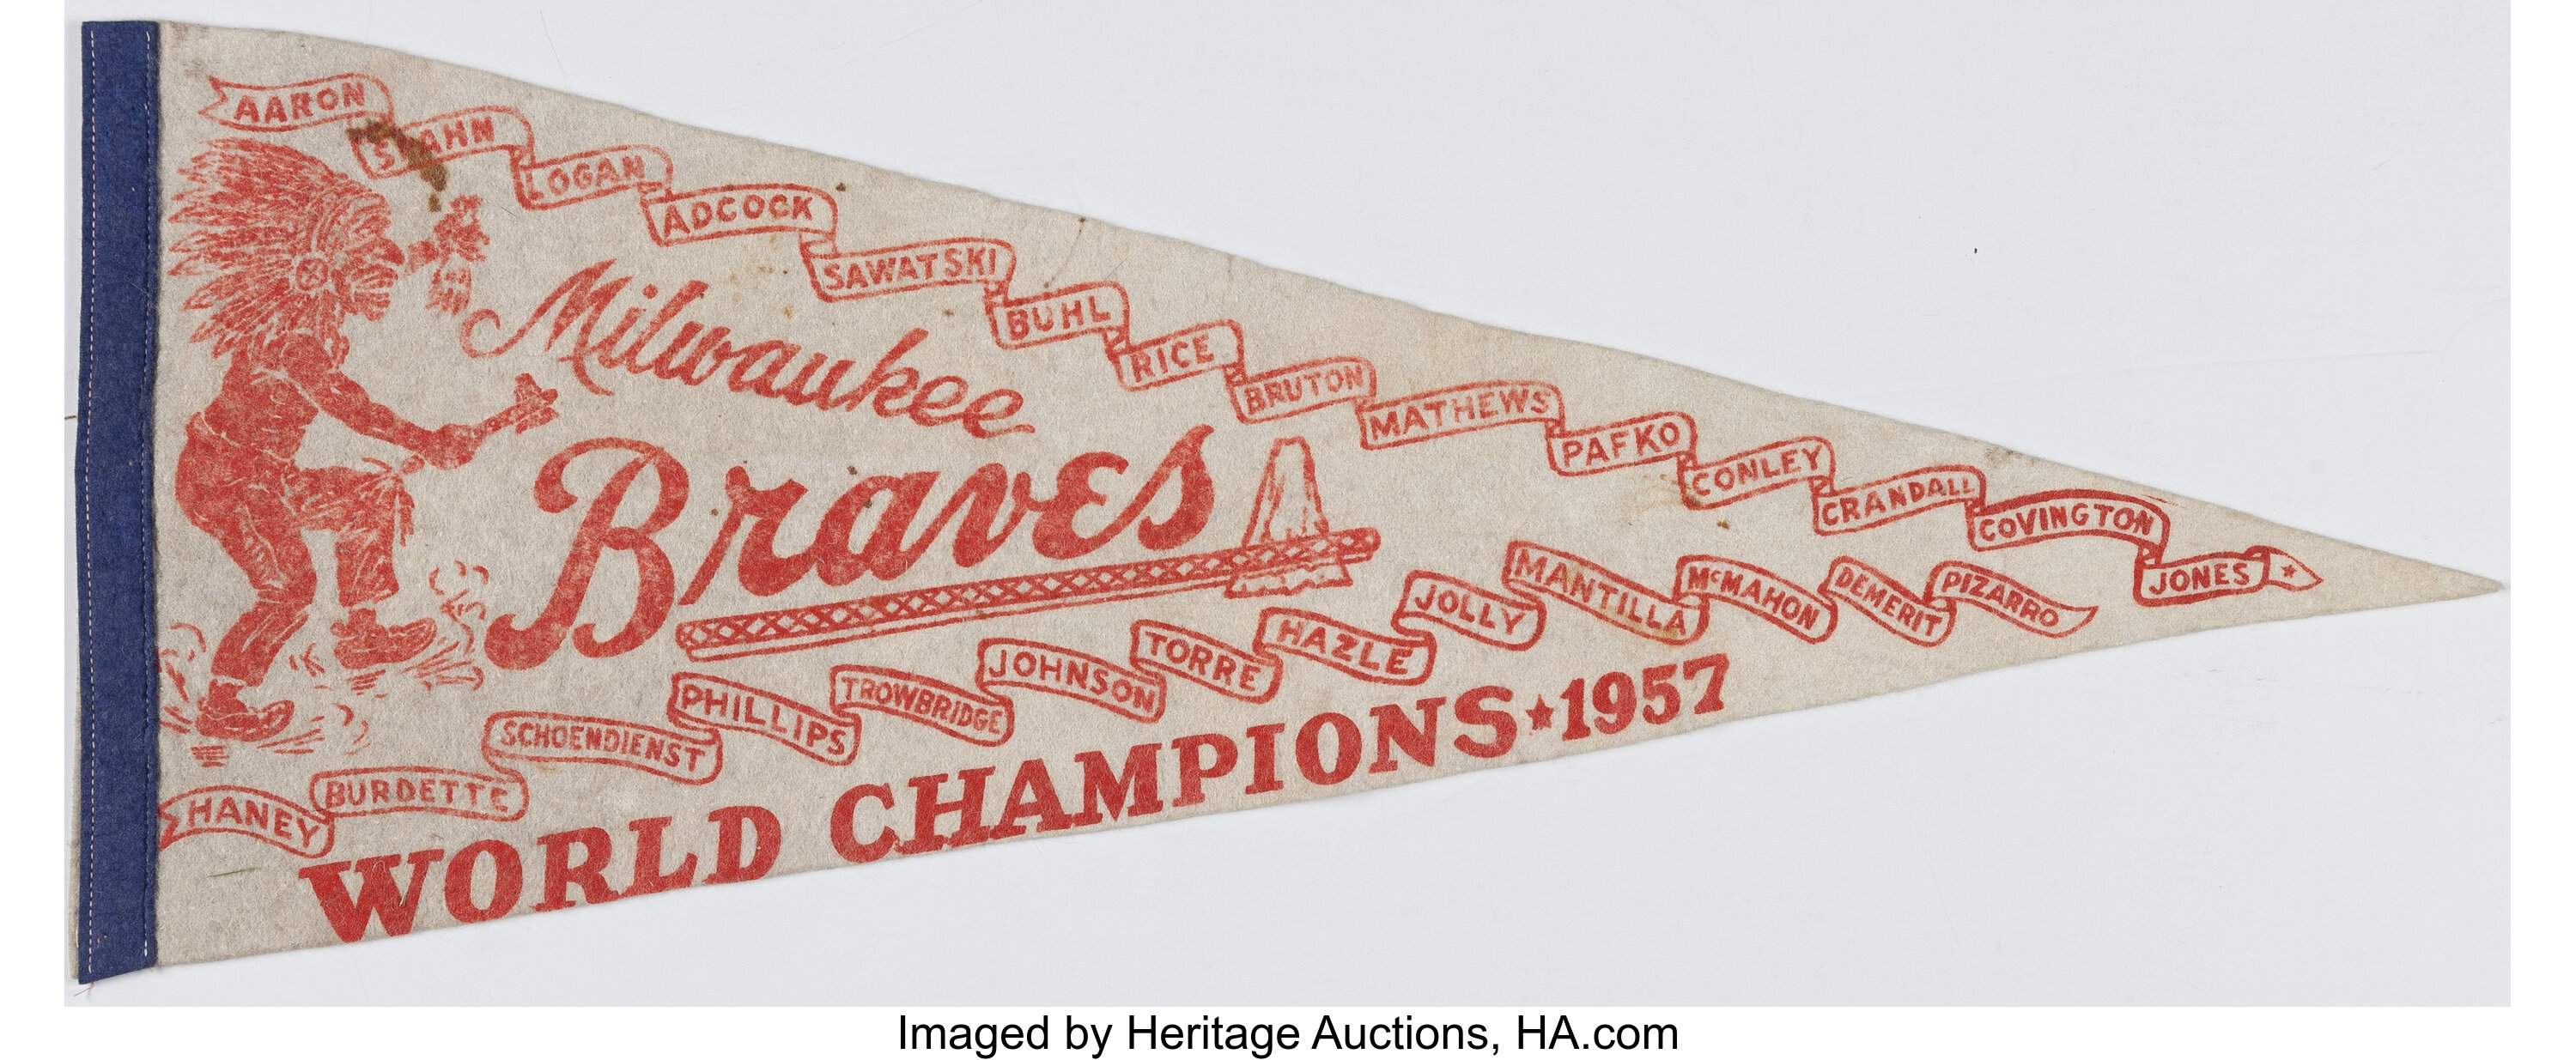 Milwaukee Braves: Pennants Memorabilia